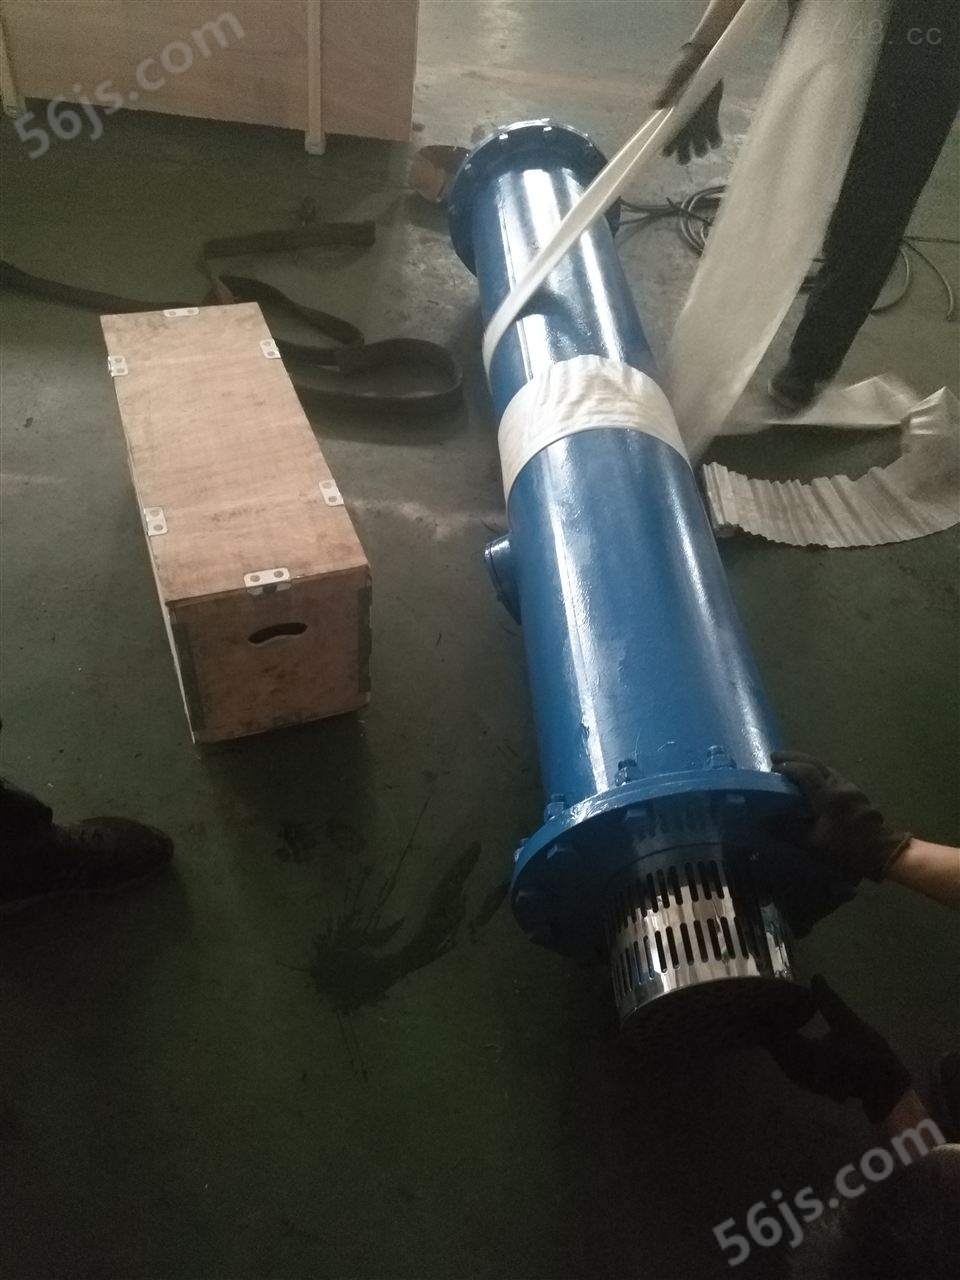 天津津奥应工程抢险抽水下吸式潜水电泵